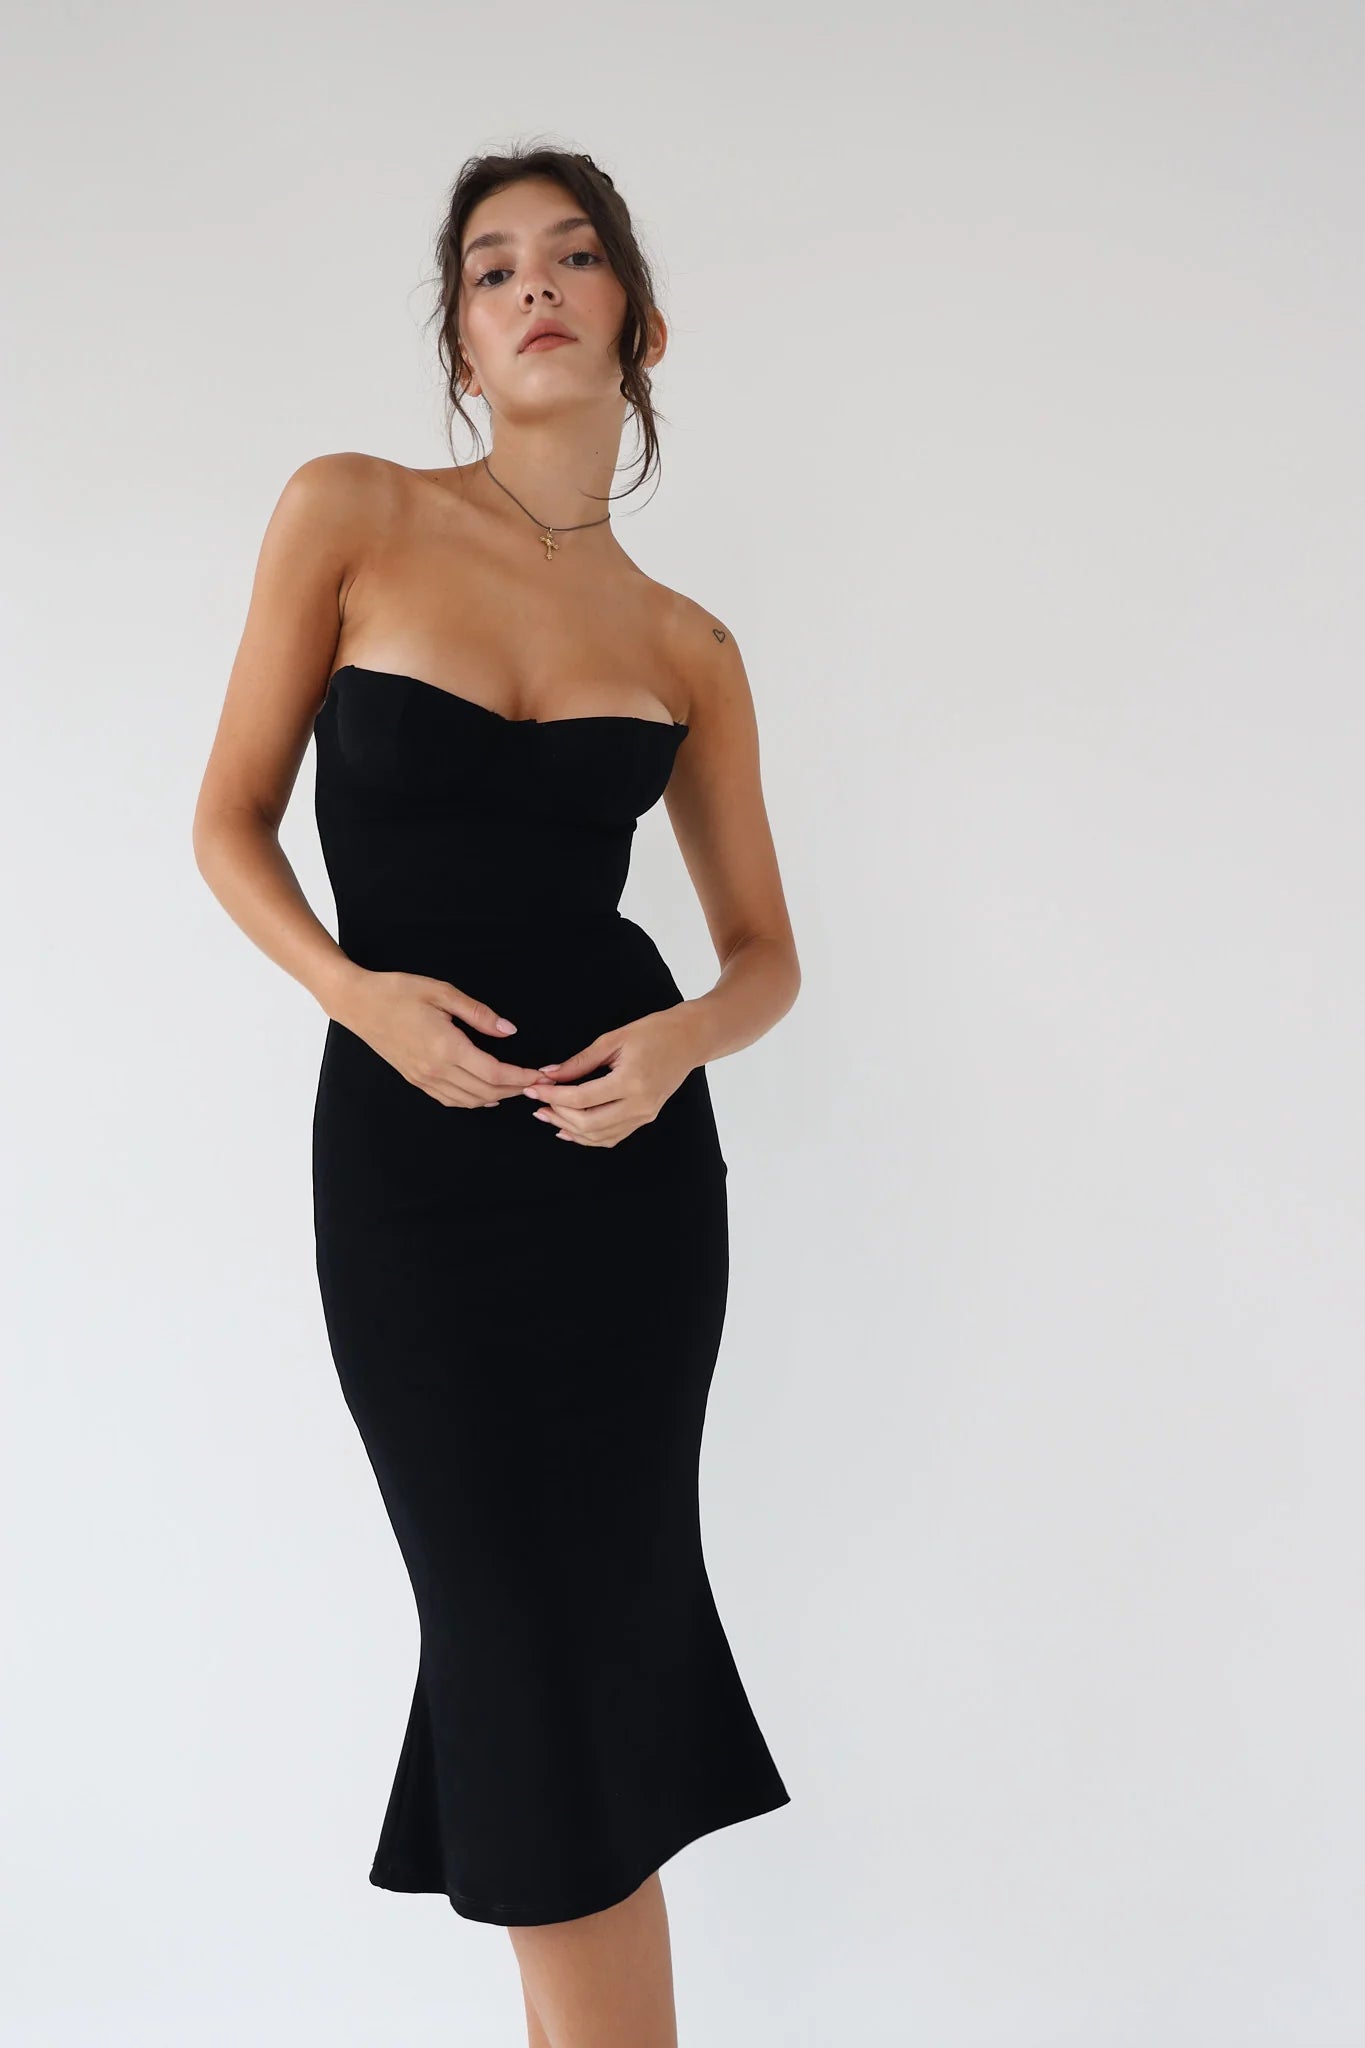 Strapless Supermodel Dress Black